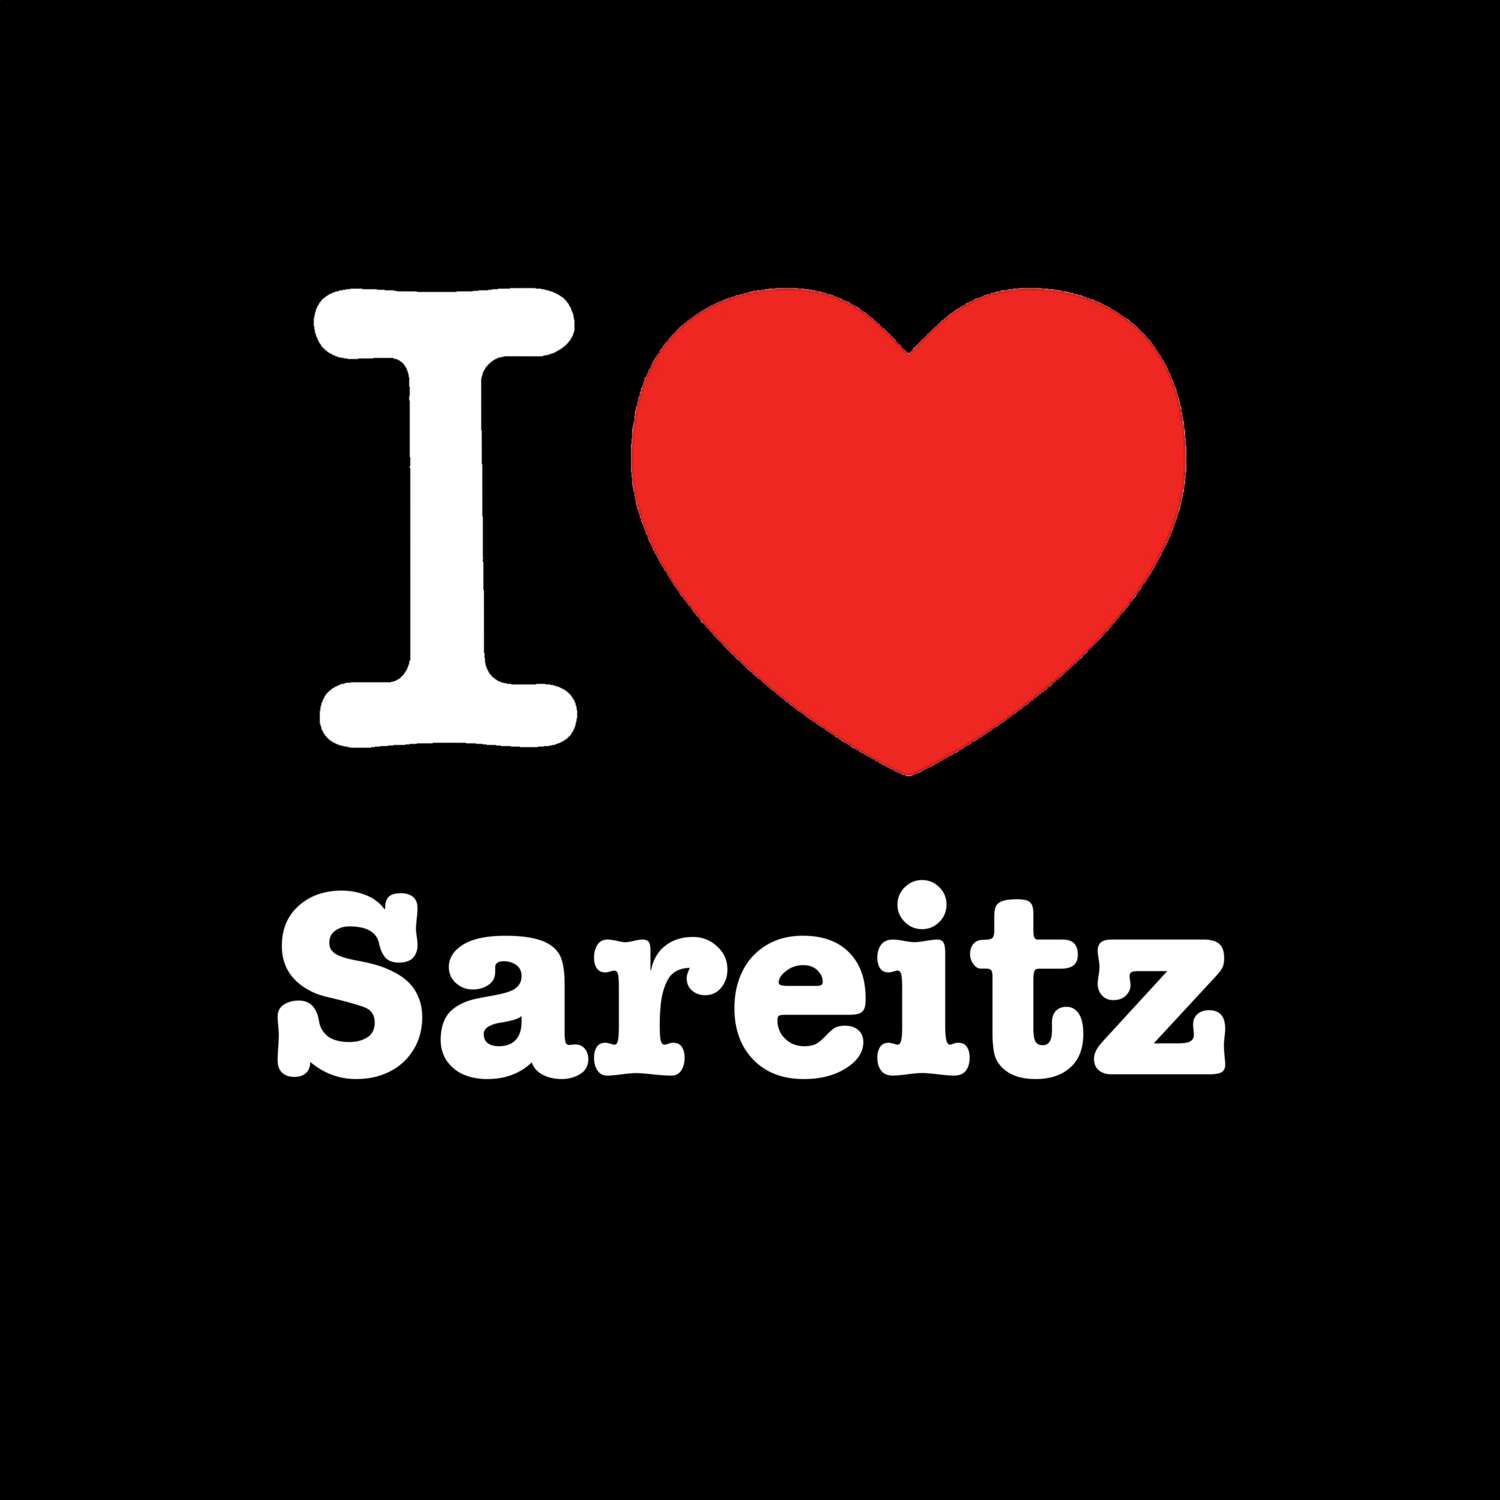 Sareitz T-Shirt »I love«